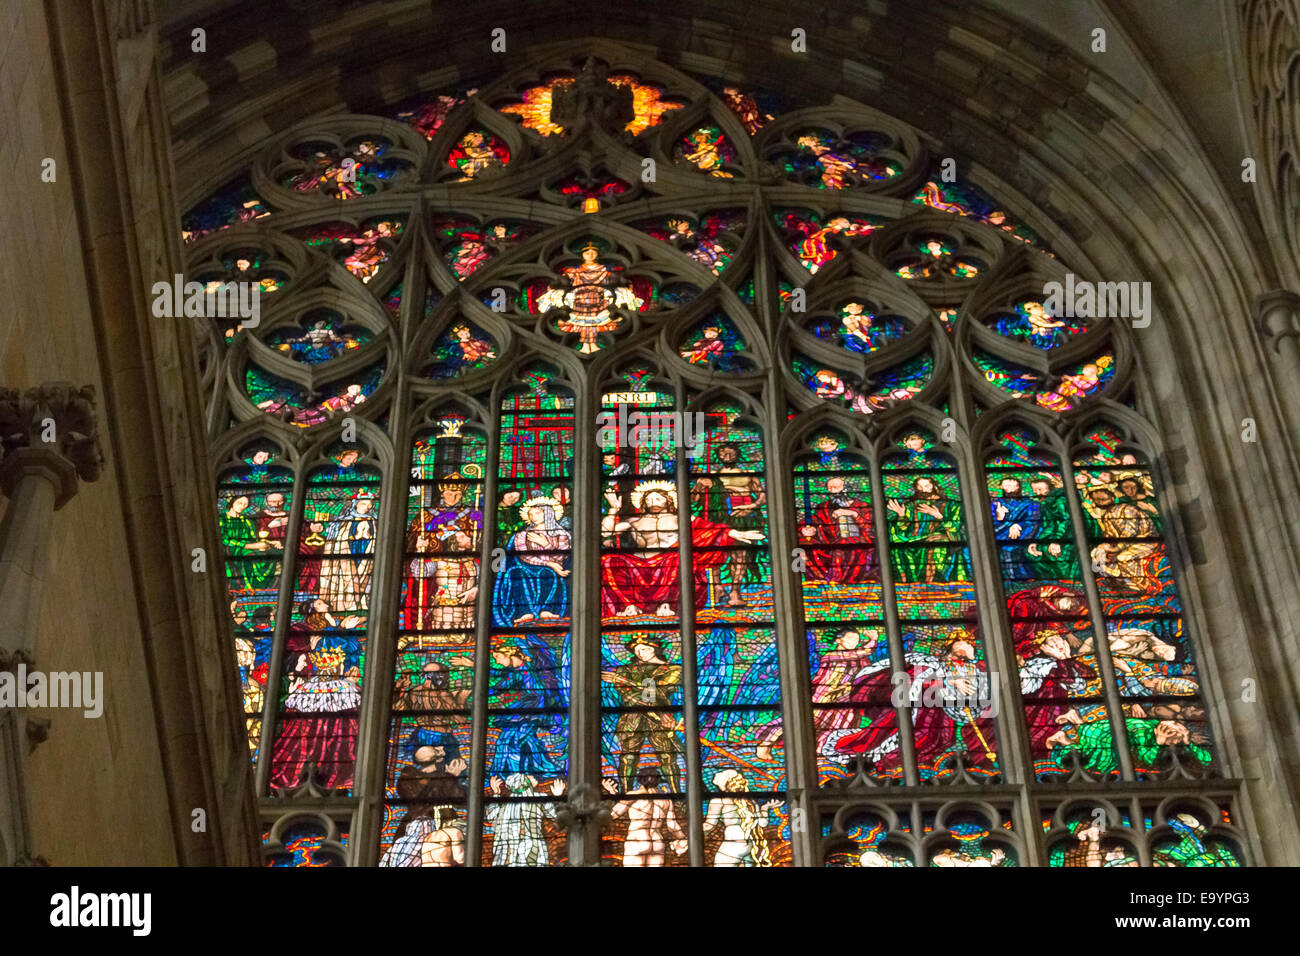 La transparence de la fenêtre de l'autocollant à l'intérieur de la cathédrale St Vitus à Prague, avec une église gothique sombre gardée par des tours : la gargouille Banque D'Images